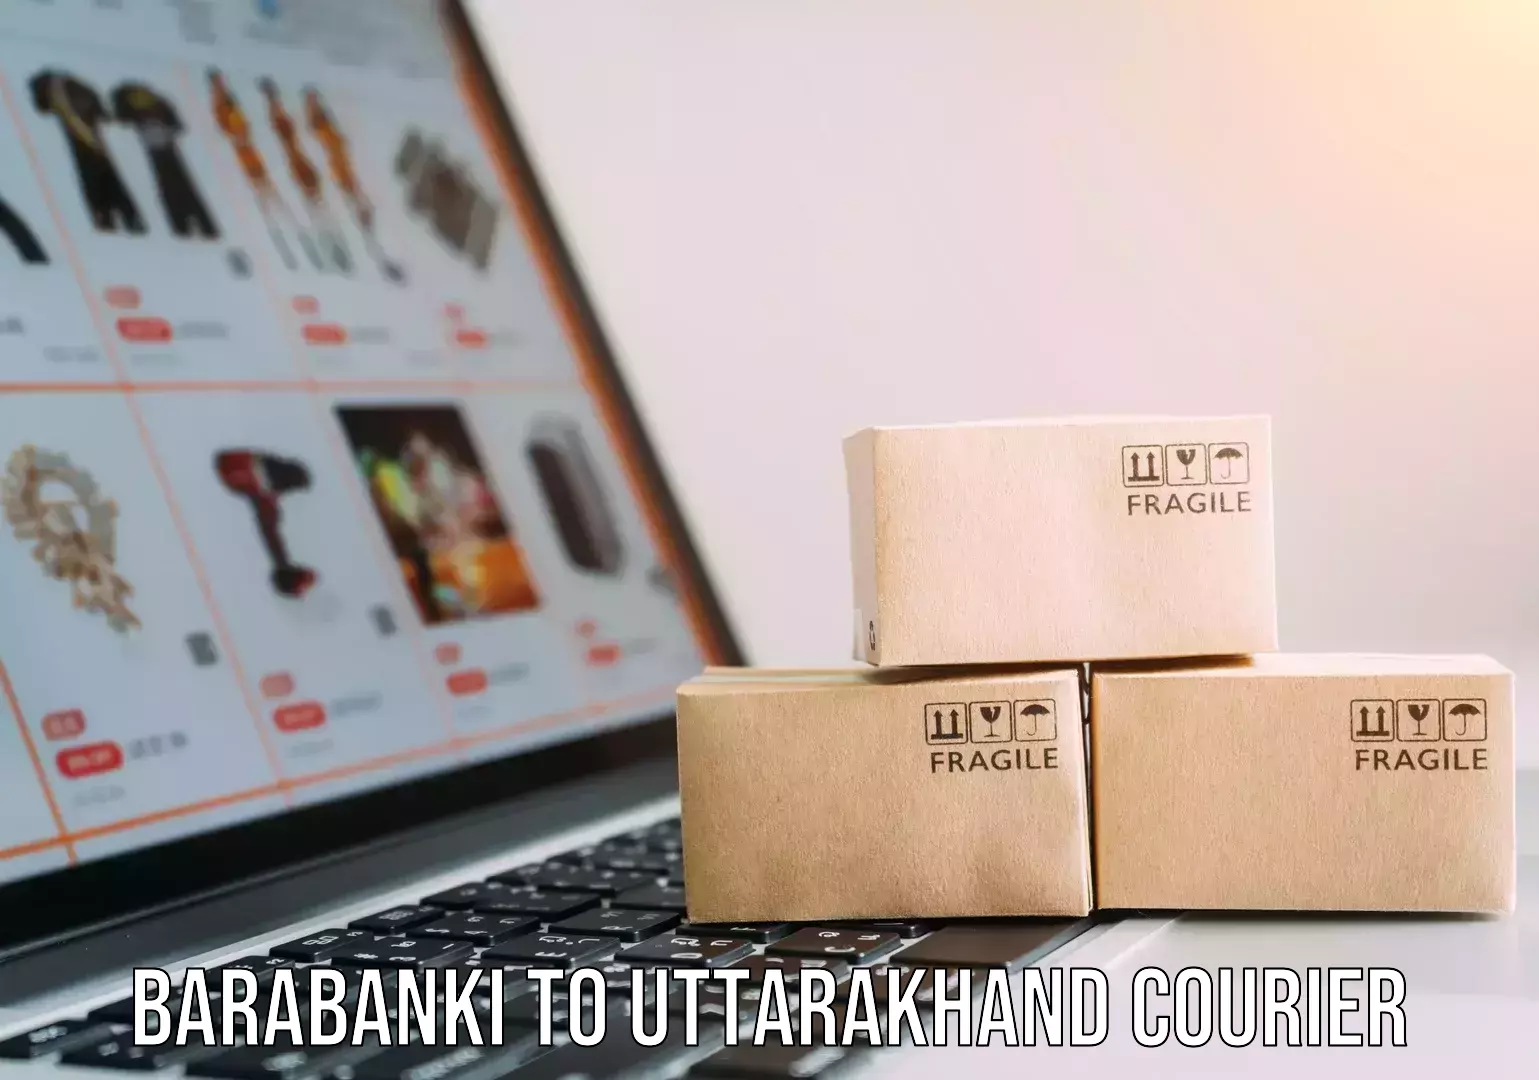 Speedy delivery service Barabanki to Uttarakhand